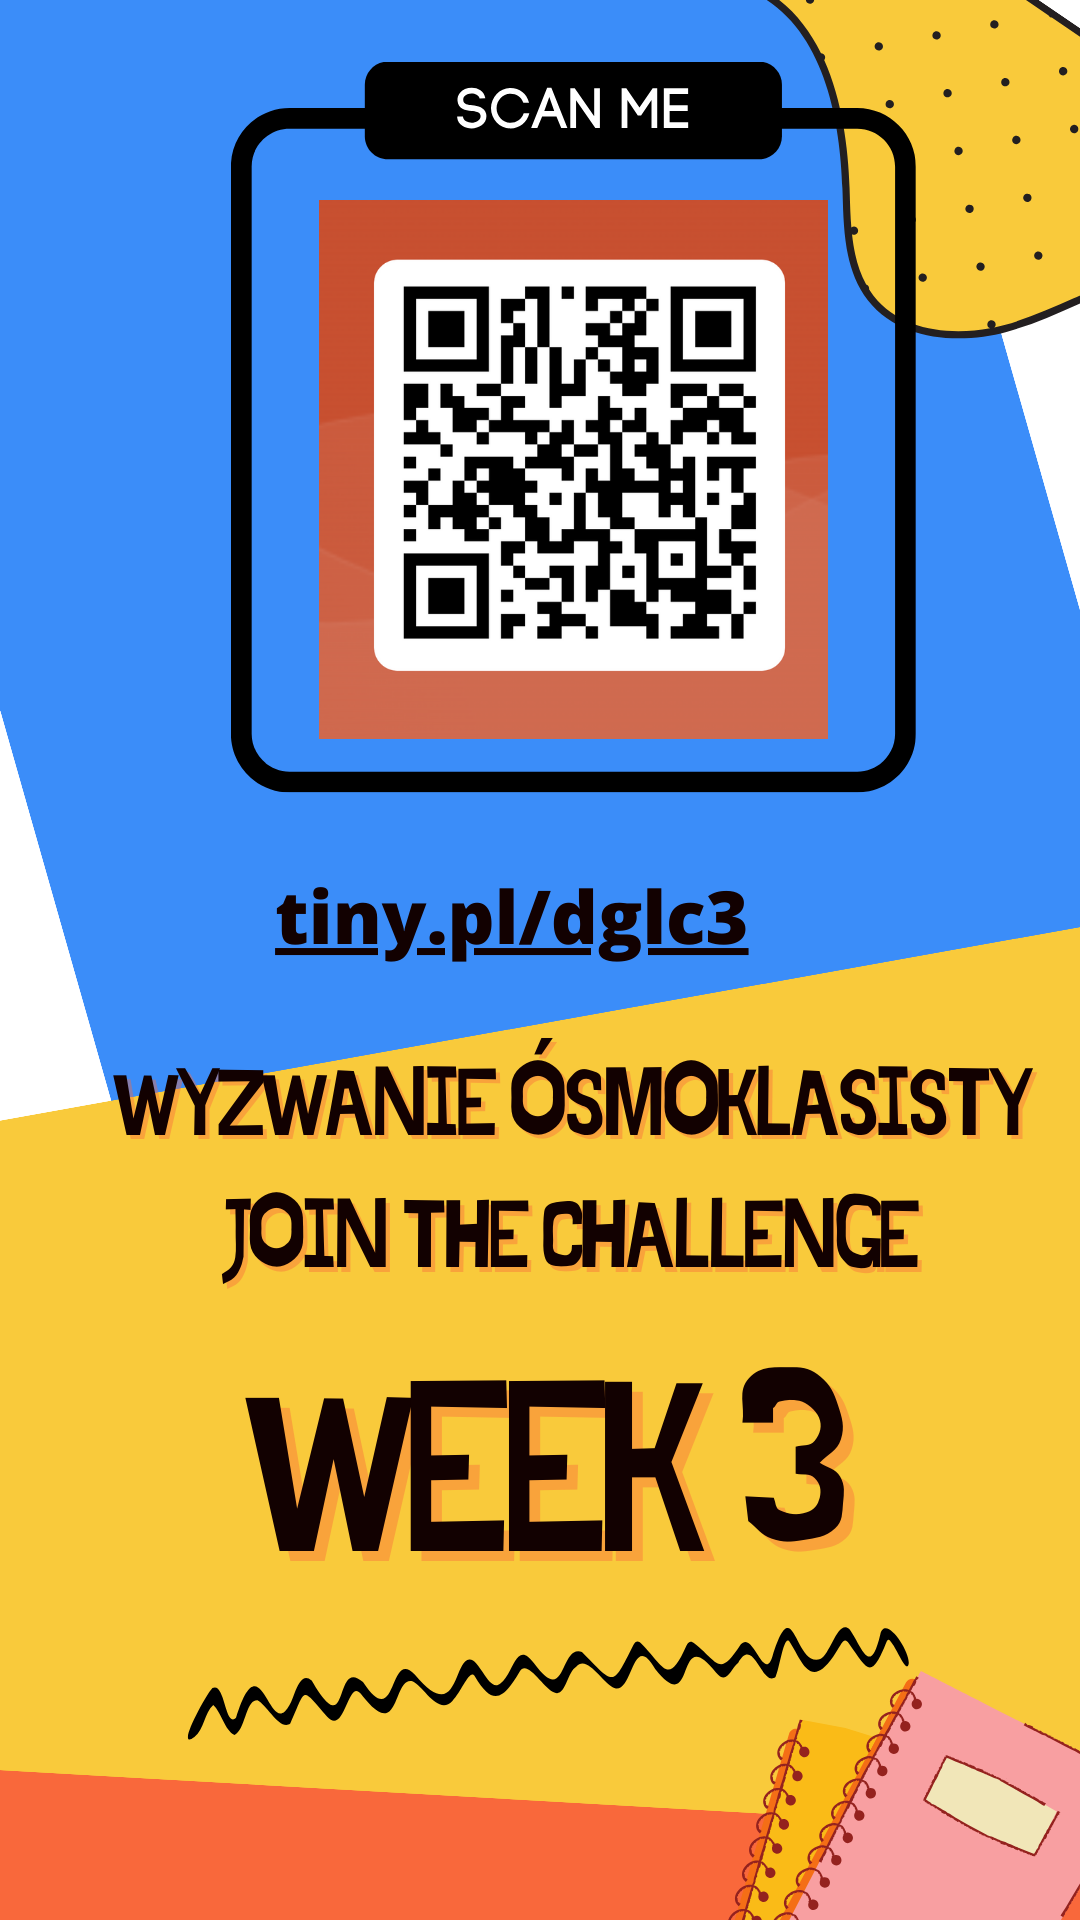 Wyzwanie ósmoklasisty - week 3